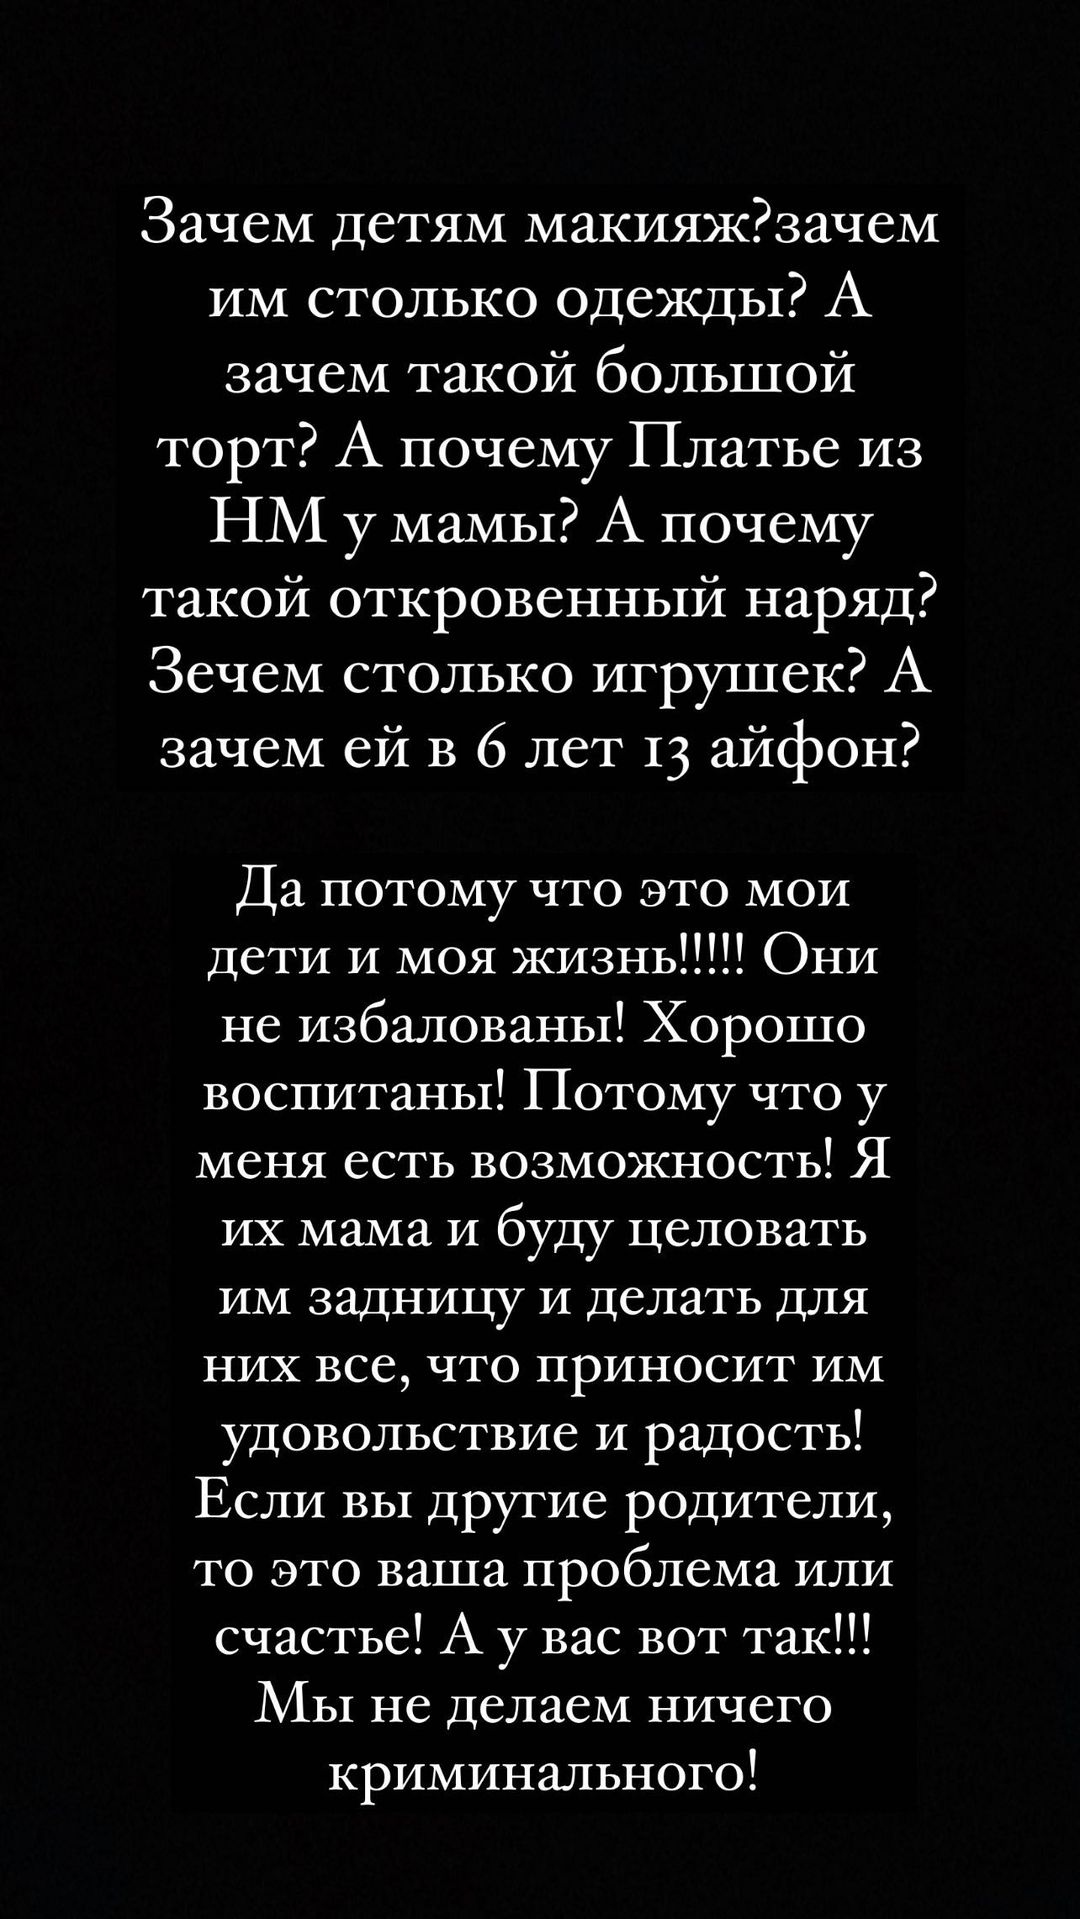 Ксения Бородина отреагировала на критику дорогих подарков для дочери и заявила, что готова «целовать задницу» своим дочерям